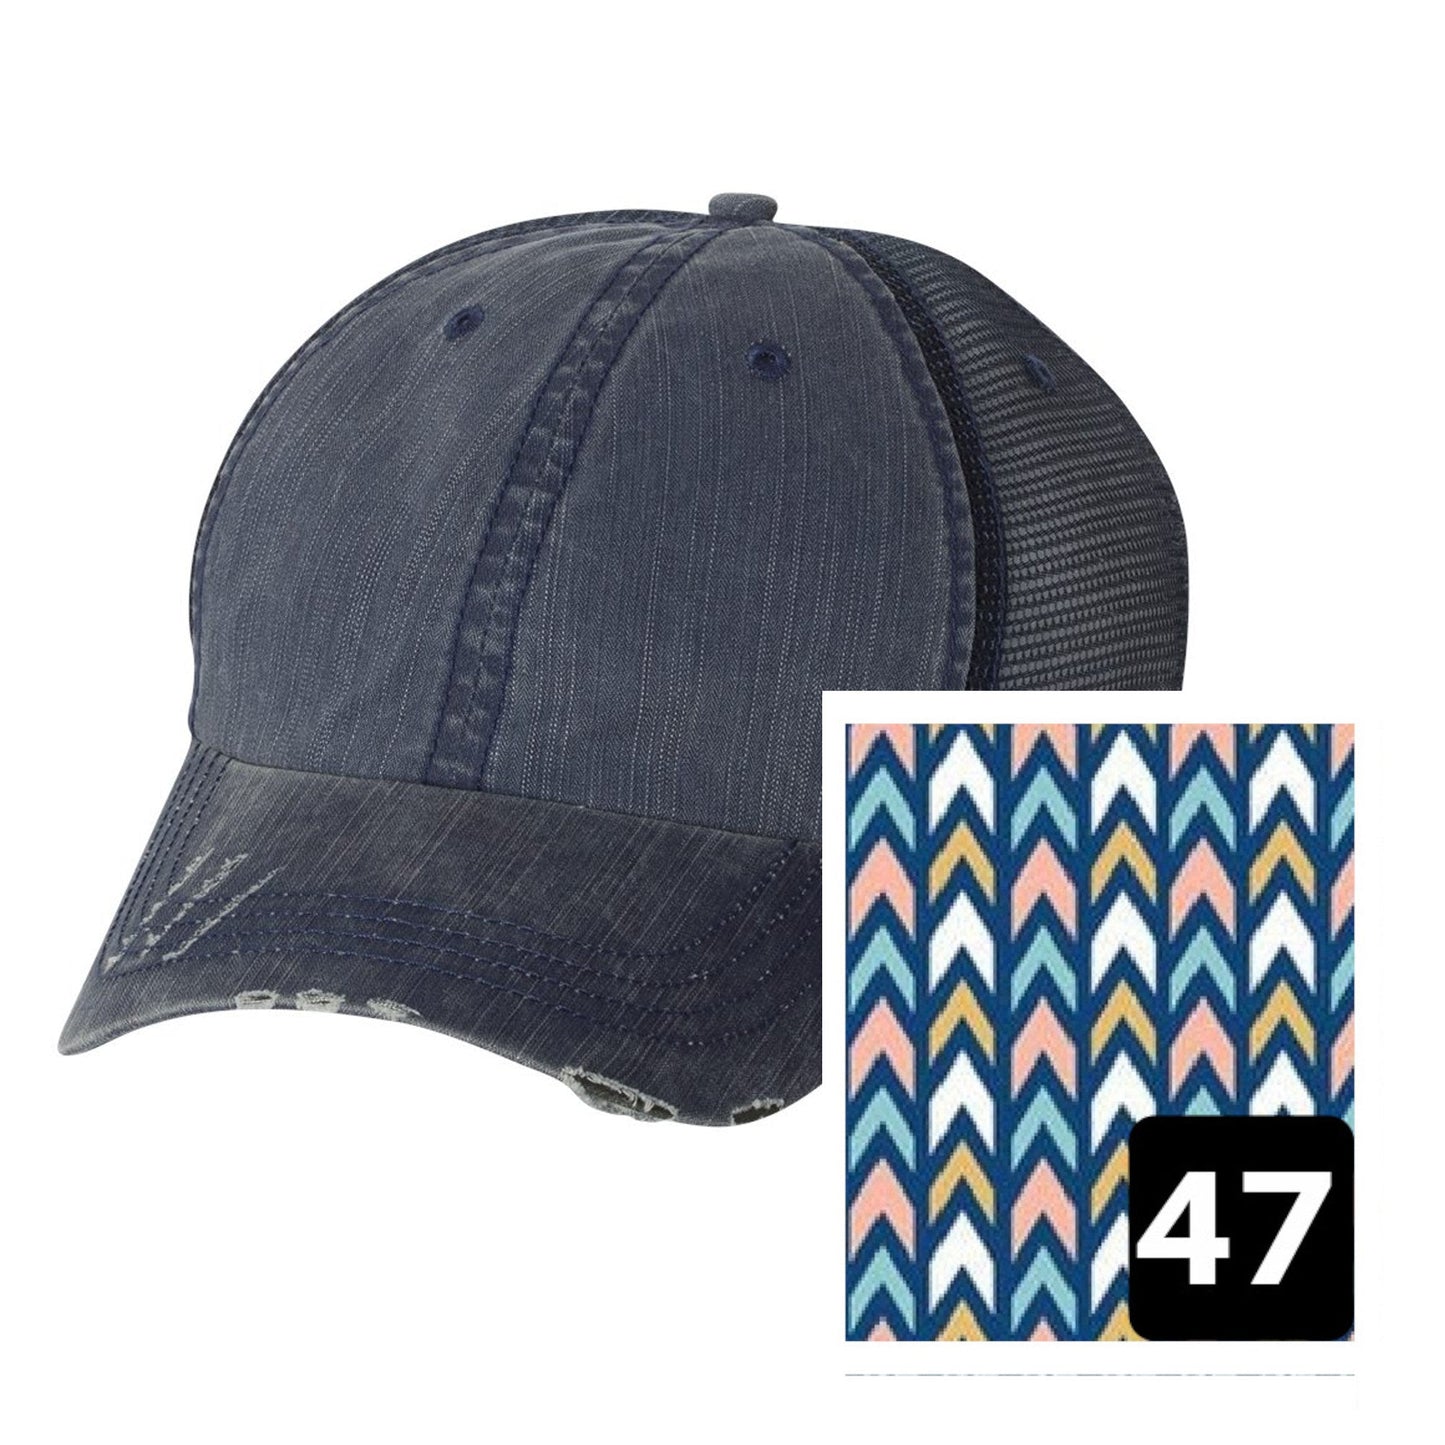 Arizona Hat | Navy Distressed Trucker Cap | Many Fabric Choices